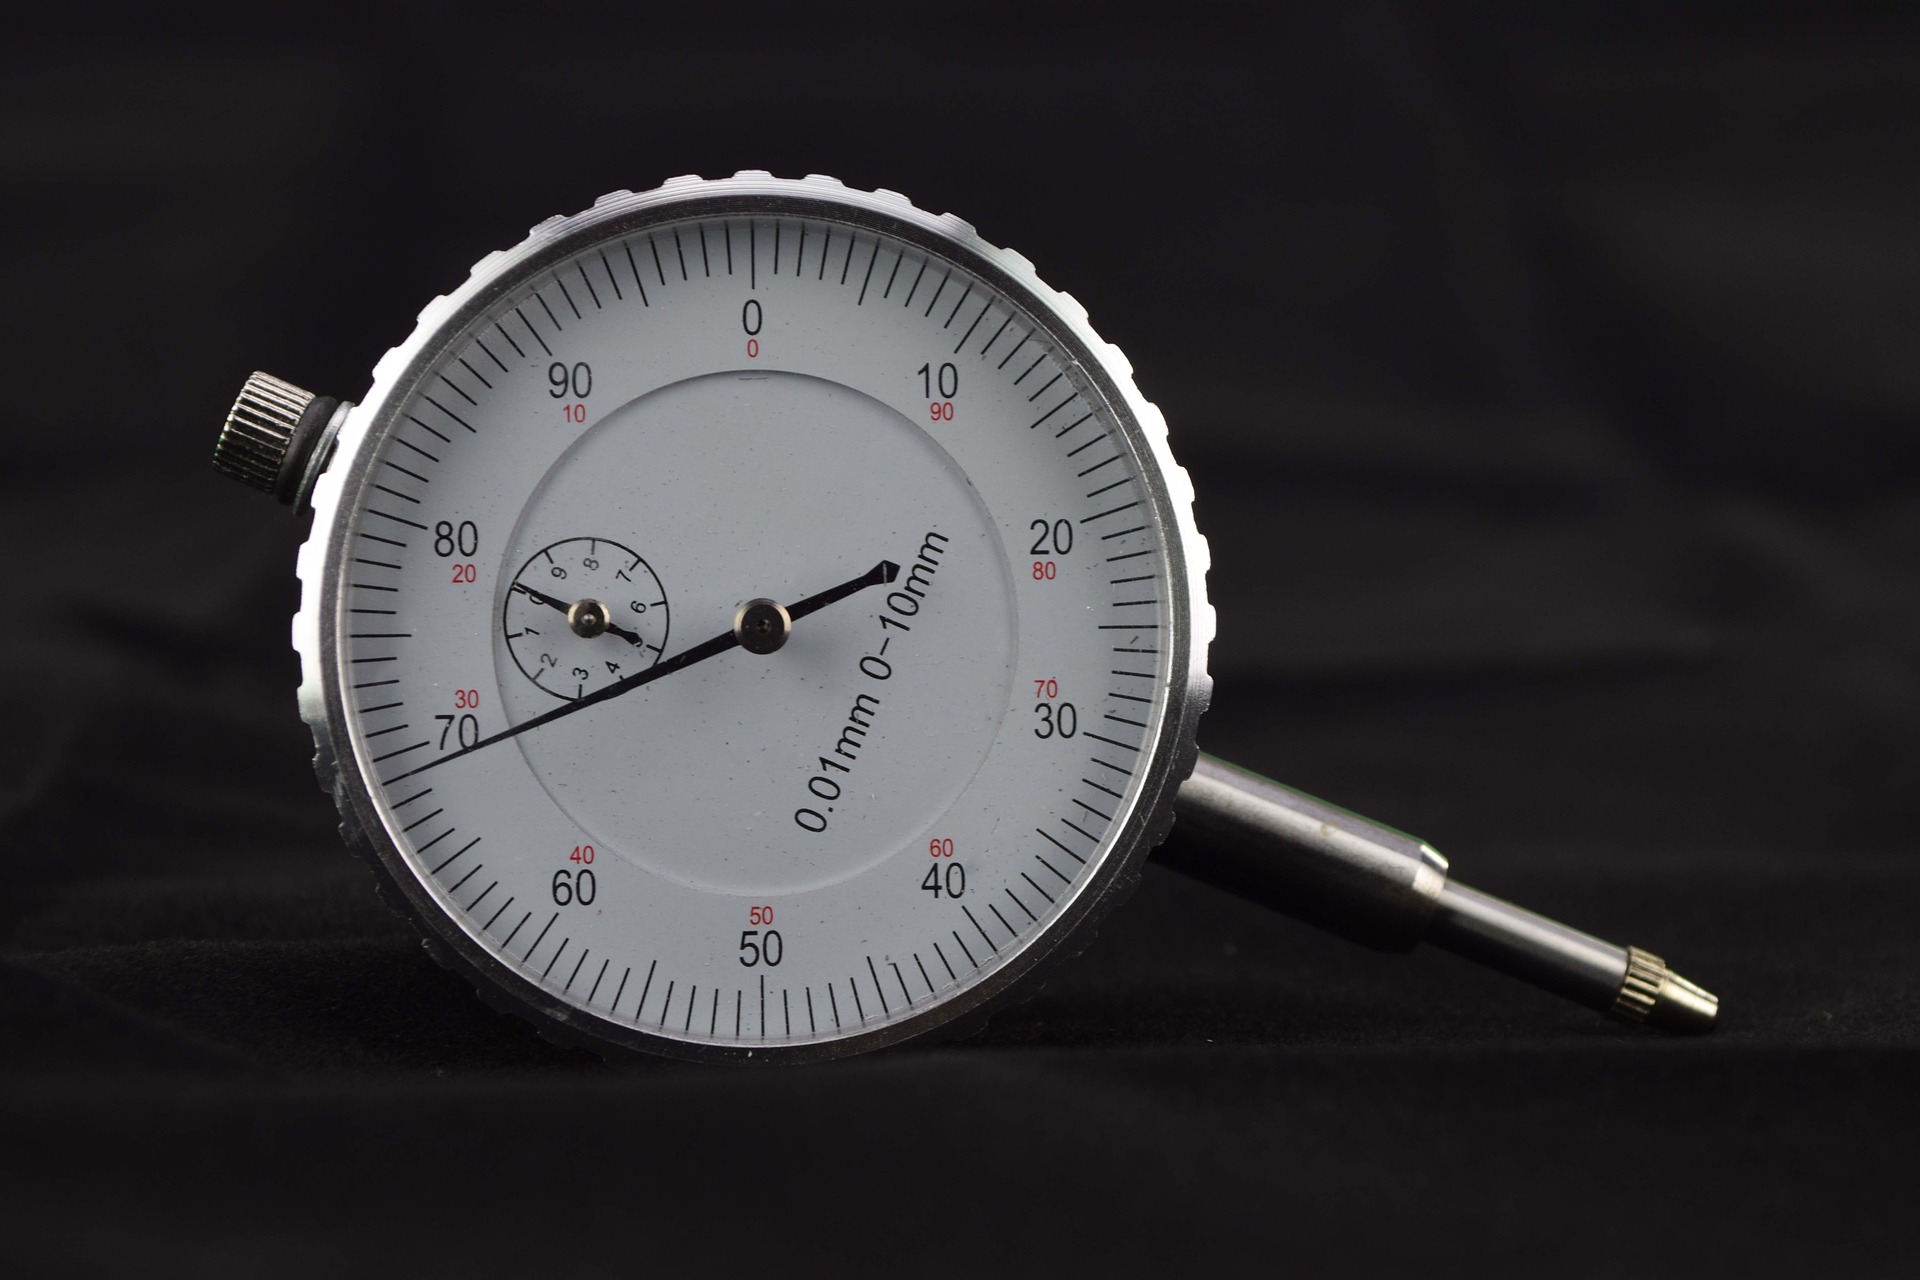 Messzeuge, Messschieber, Mikrometer, Messuhren - Digital-Messuhr, 12,5 x  0,001 mm, 10 µm